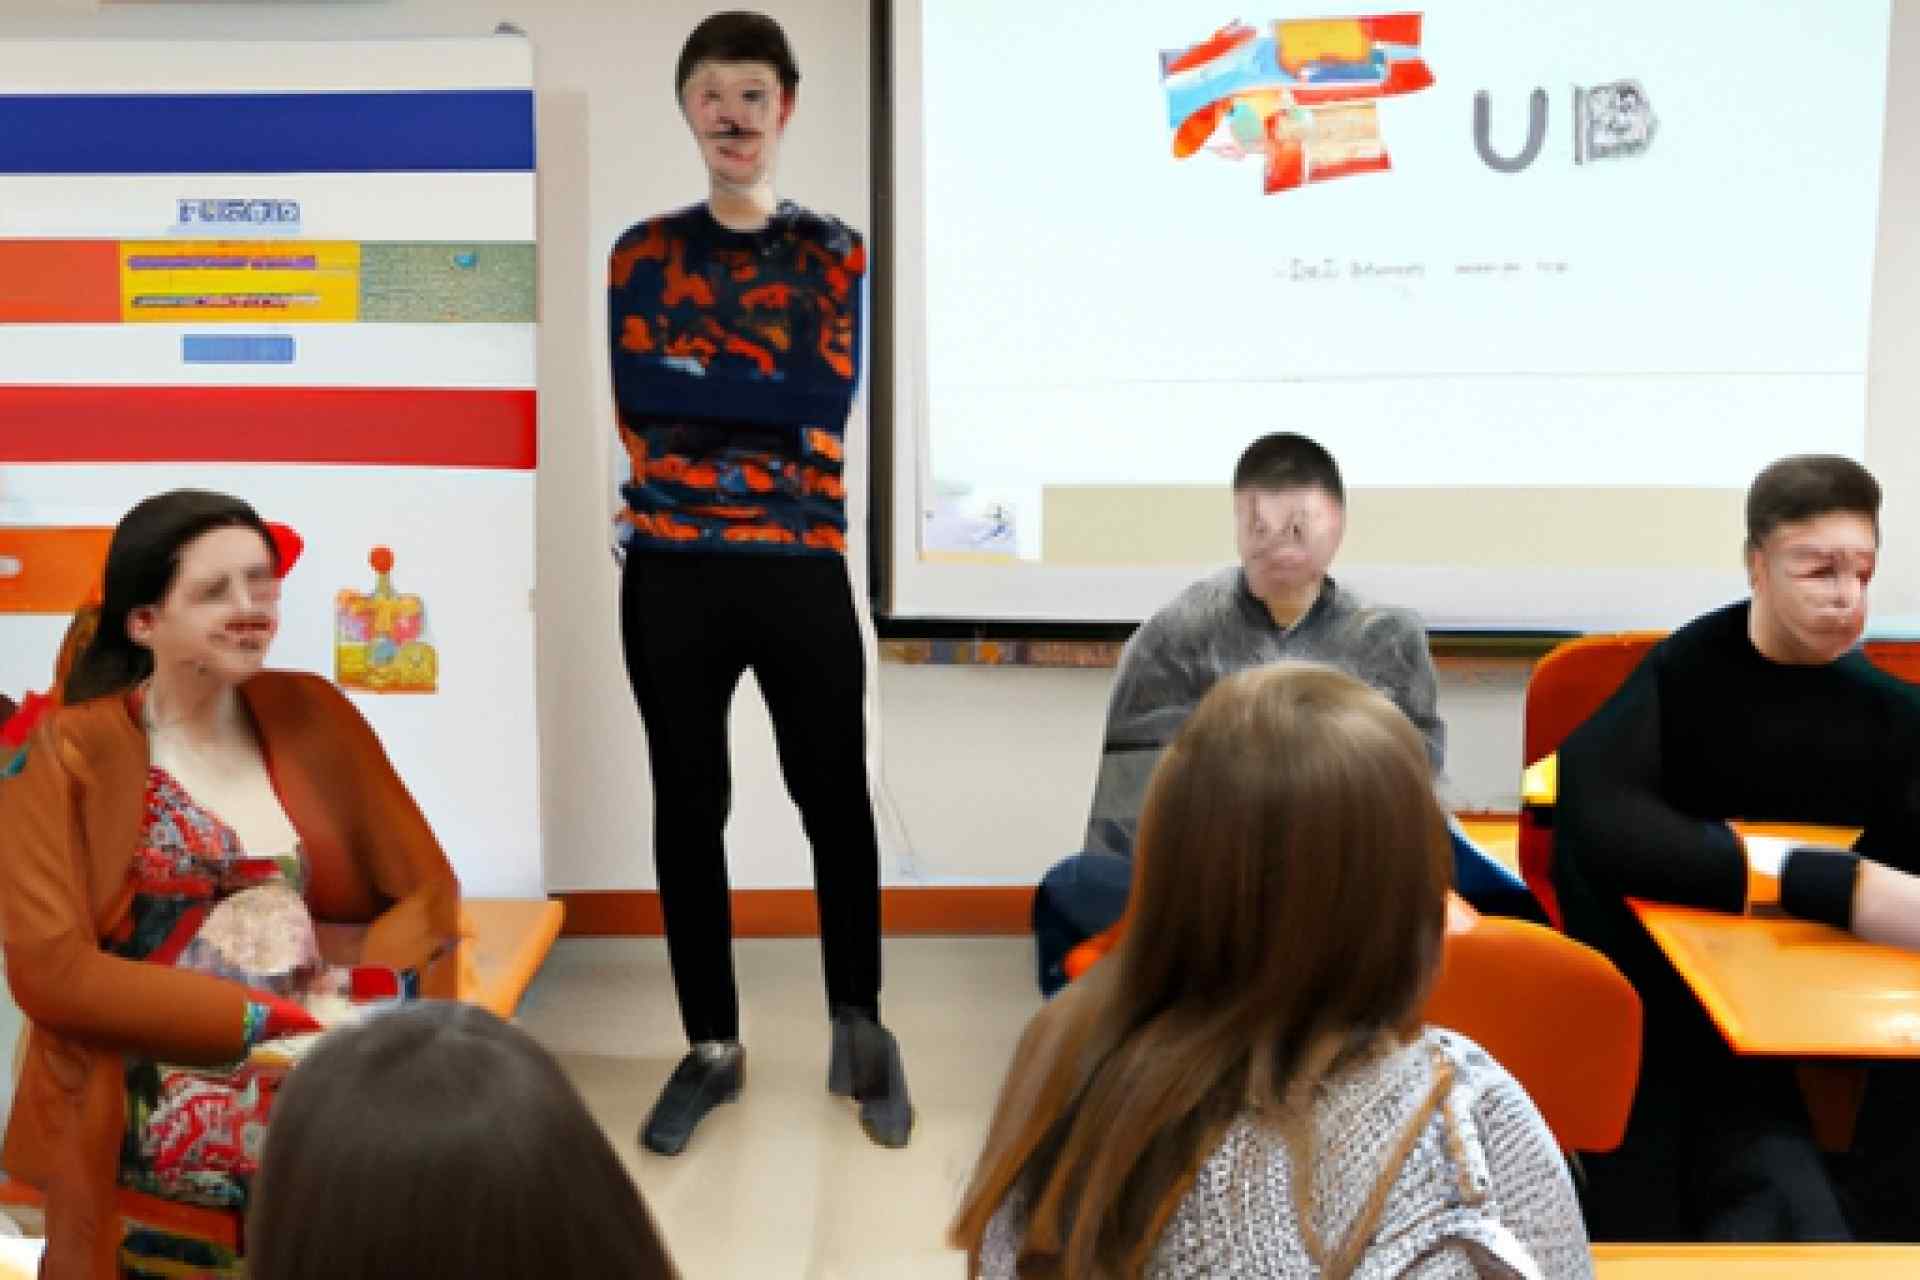 安加尔斯克国立技术学院的俄罗斯文化周活动：让留学生更好地融入俄罗斯社会